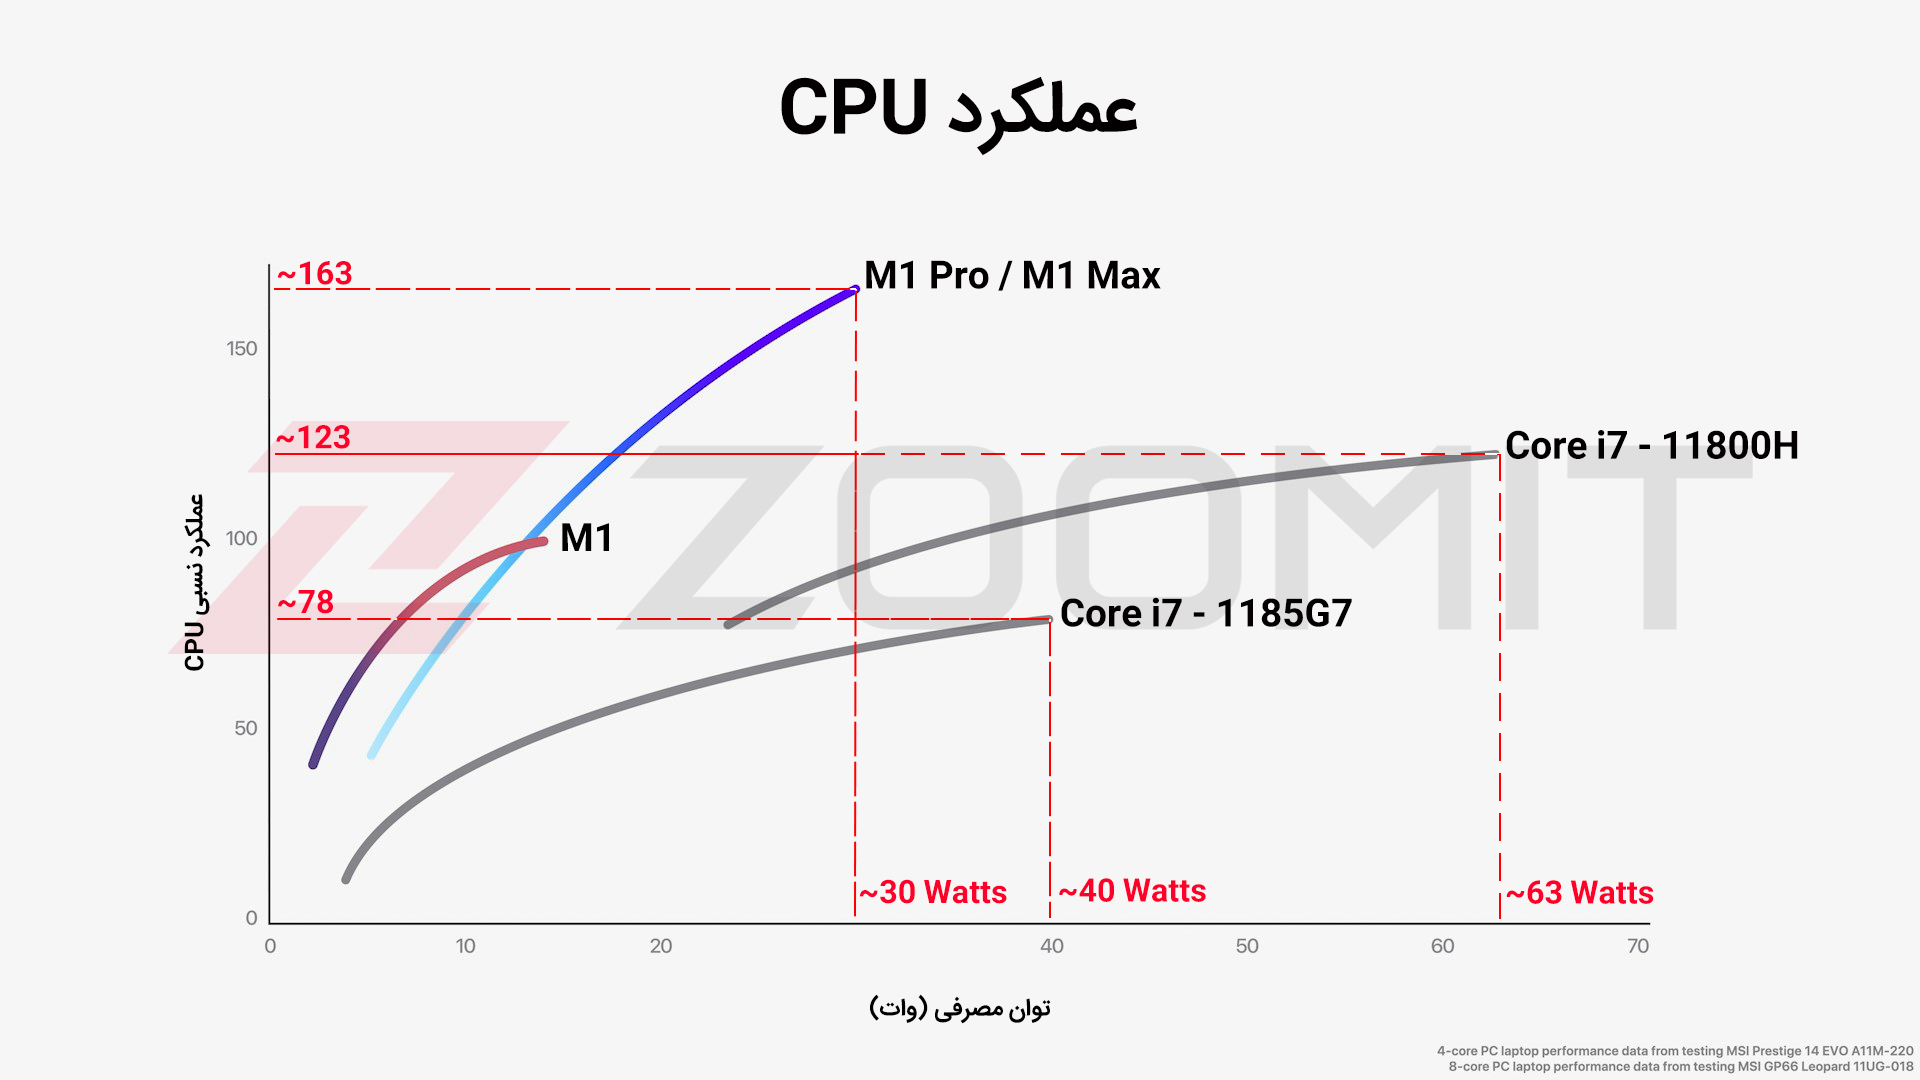 تخمین عملکرد پردازنده در M1 Pro و M1 Max